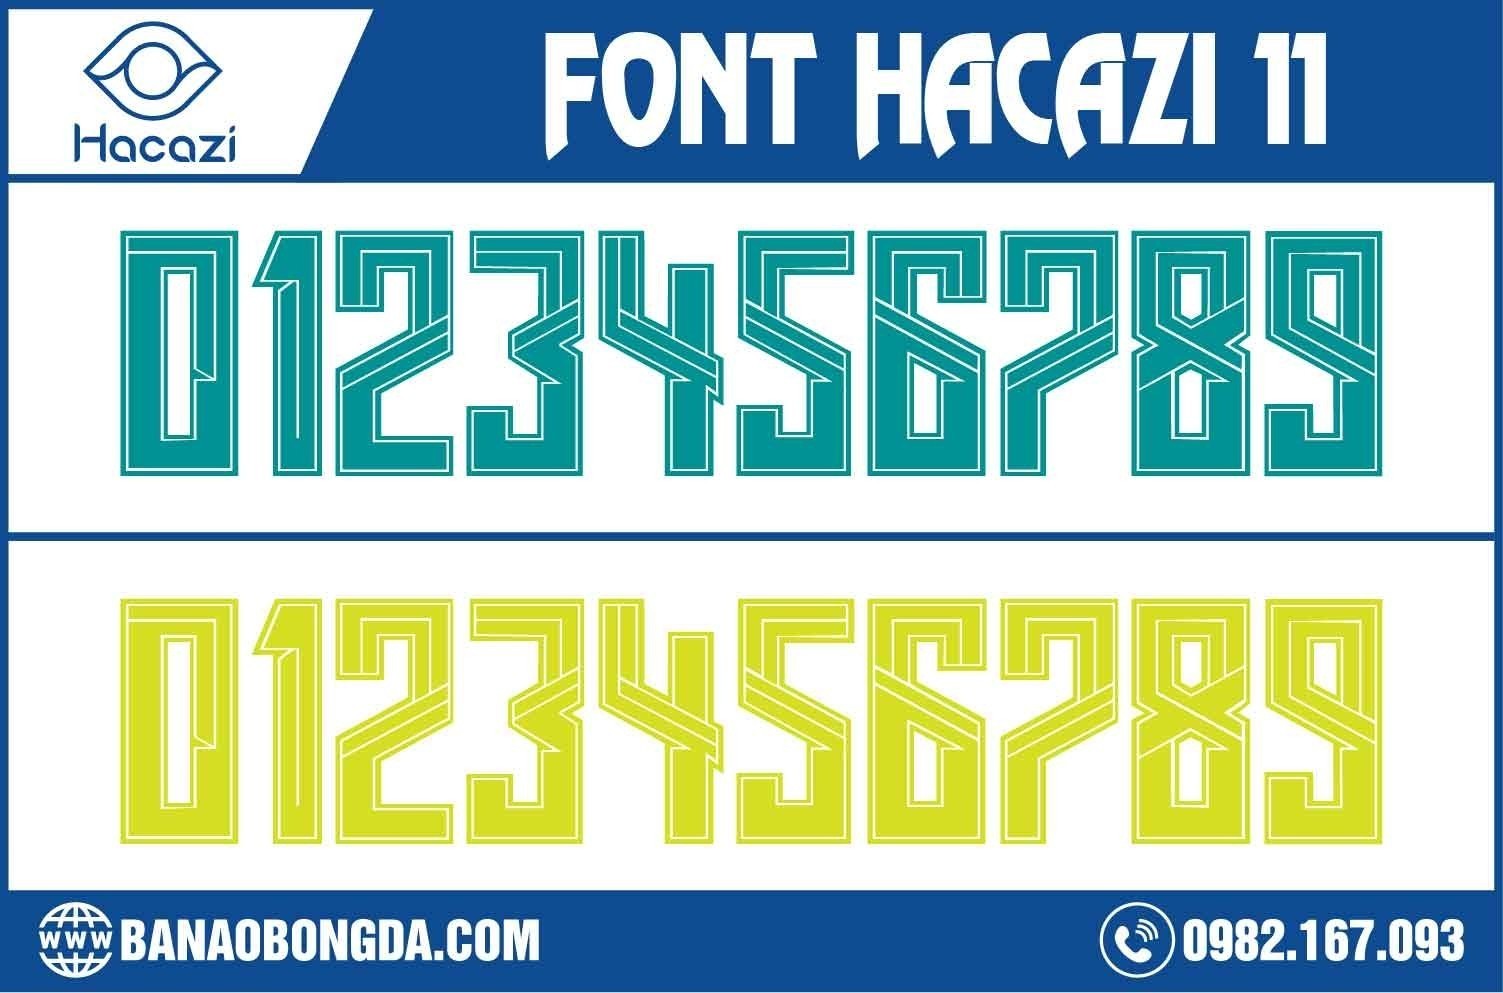  Bạn đã sẵn sàng cùng với shop Hacazi Sport giải mã mẫu font số áo bóng đá 11 được thiết kế vô cùng phong cách này chưa? Không chỉ sở hữu màu sắc thời thường với gam màu dạ quang và xanh real, mà cách nhấn nhá các đường nét trên số áo cũng khiến nó trở nên đặc biệt nhất. 